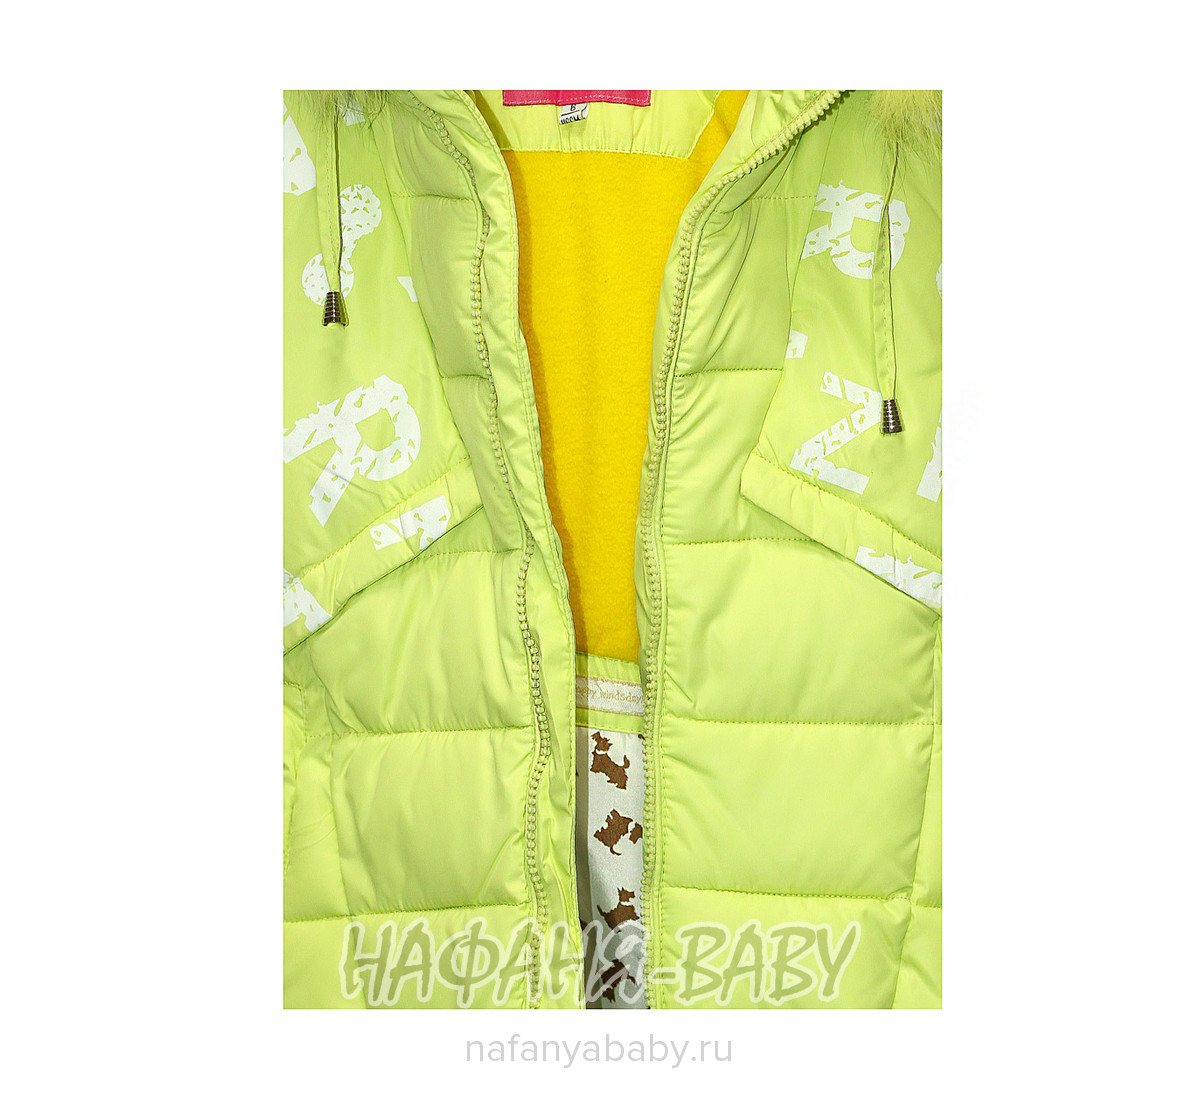 Детская куртка YIXIANG арт: 566, 5-9 лет, 1-4 года, цвет светлый зеленый, оптом Китай (Пекин)